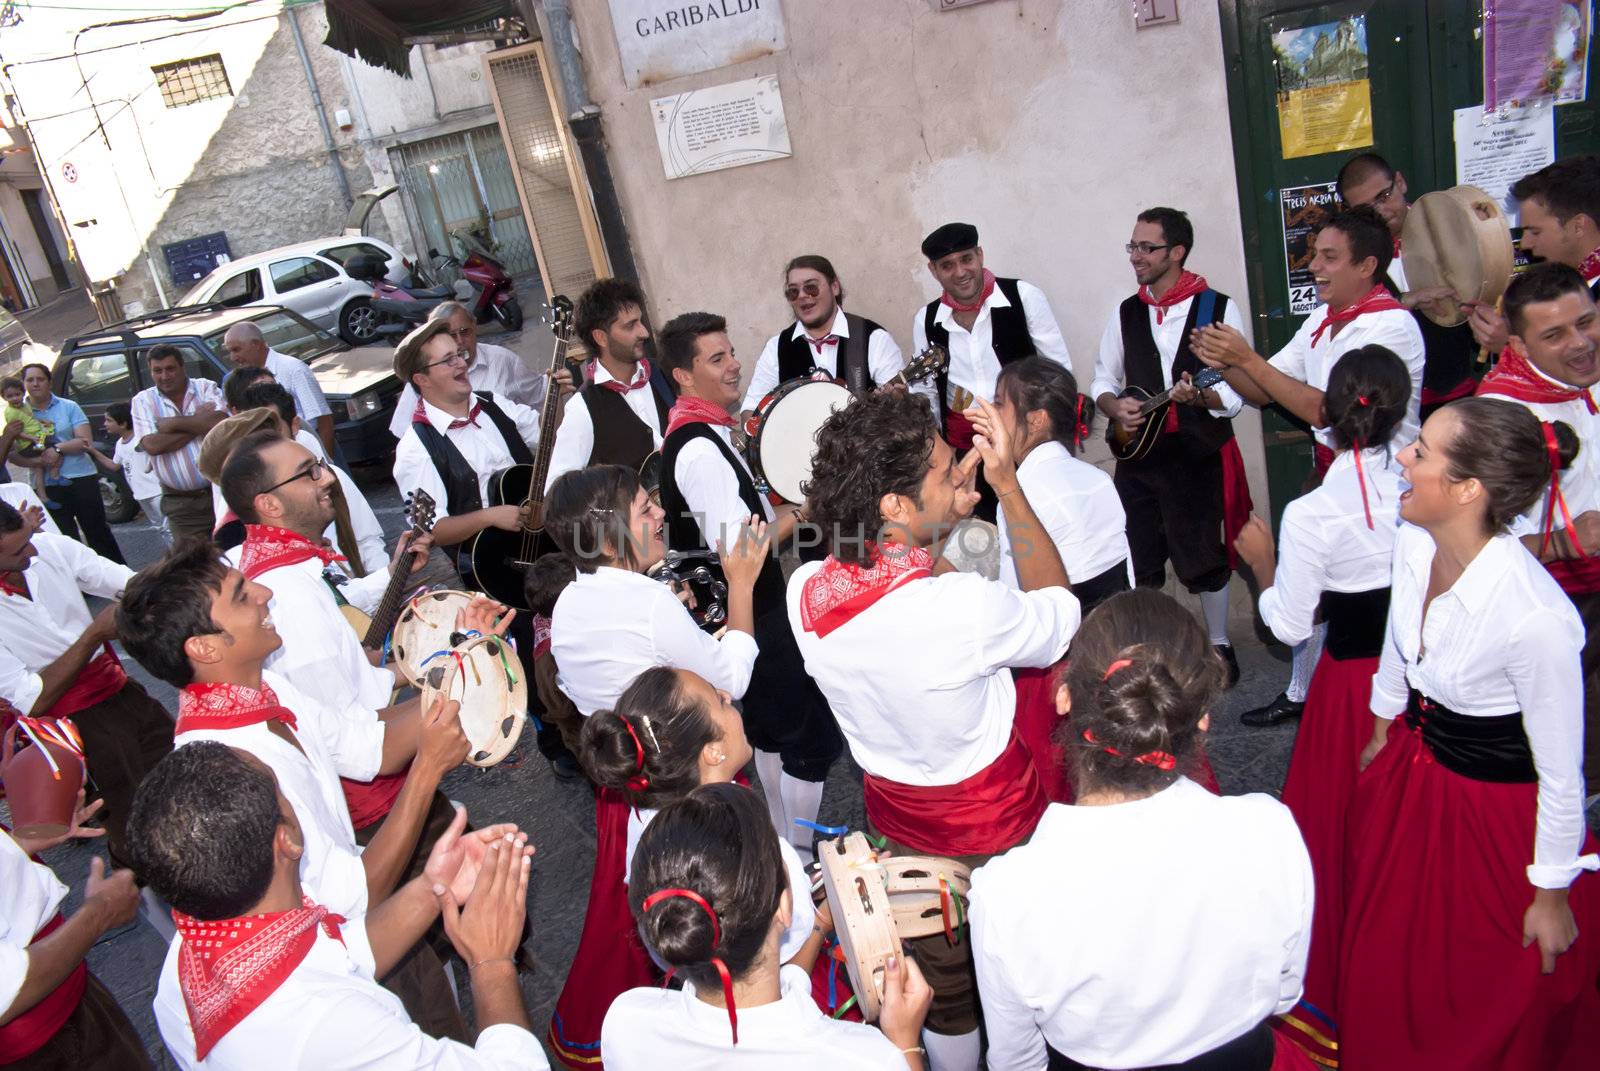 Sicilian folk group from Polizzi Generosa by gandolfocannatella